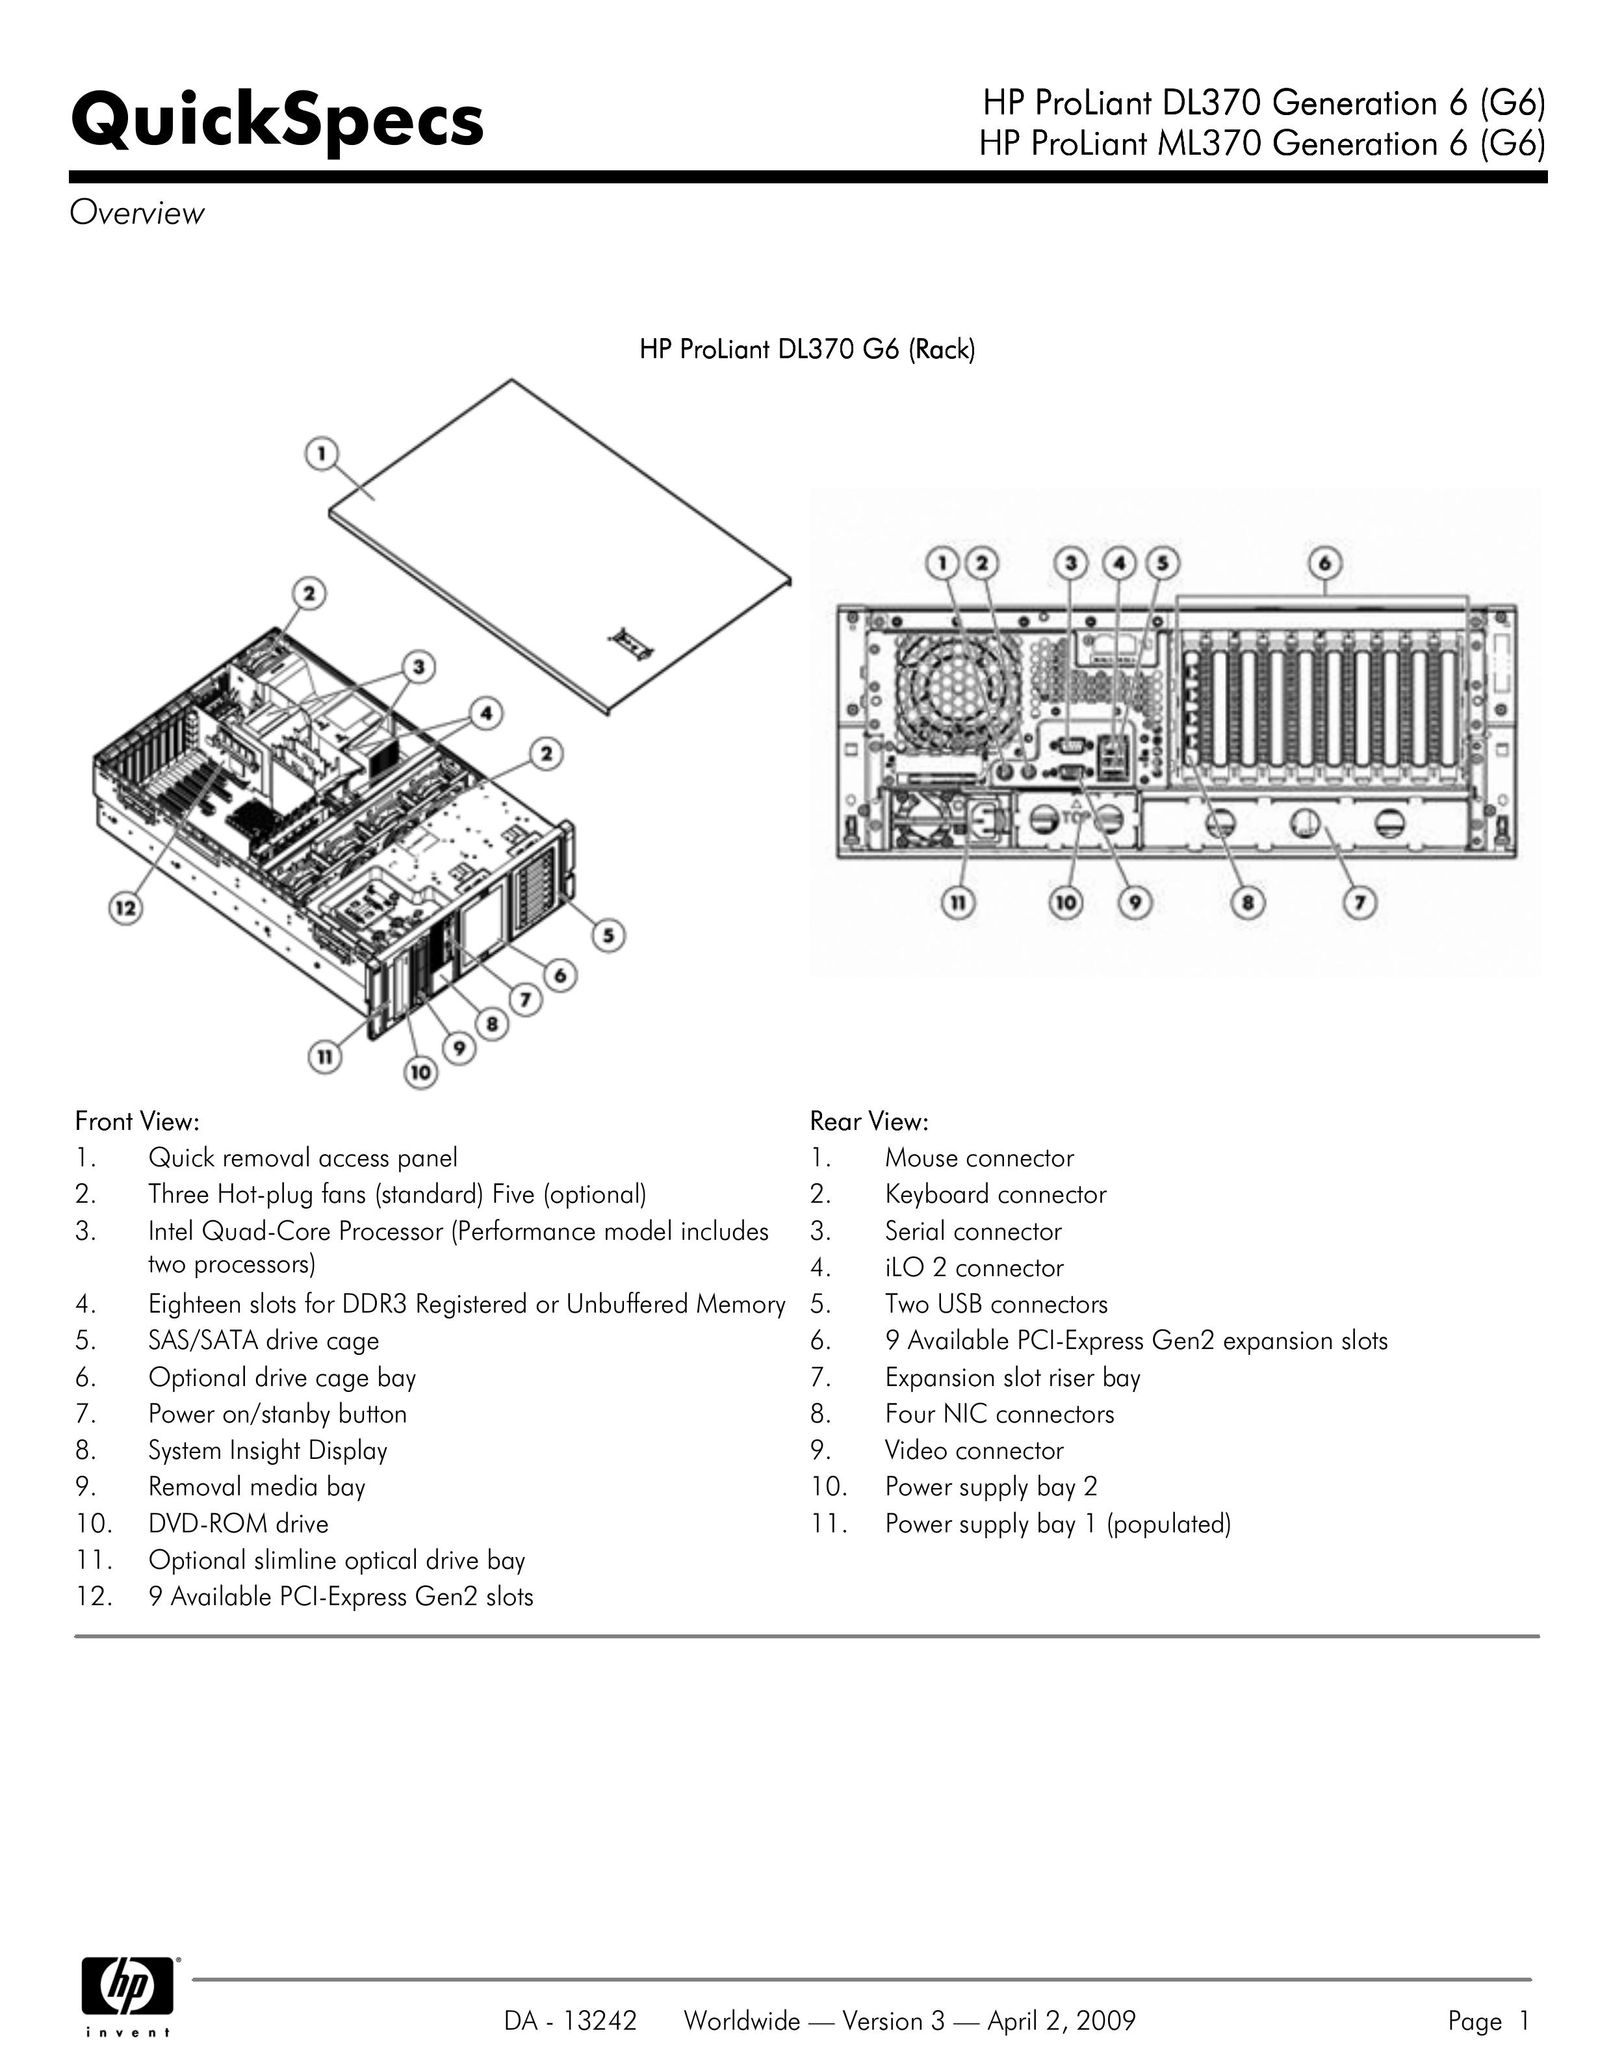 HP (Hewlett-Packard) DL370 Computer Hardware User Manual